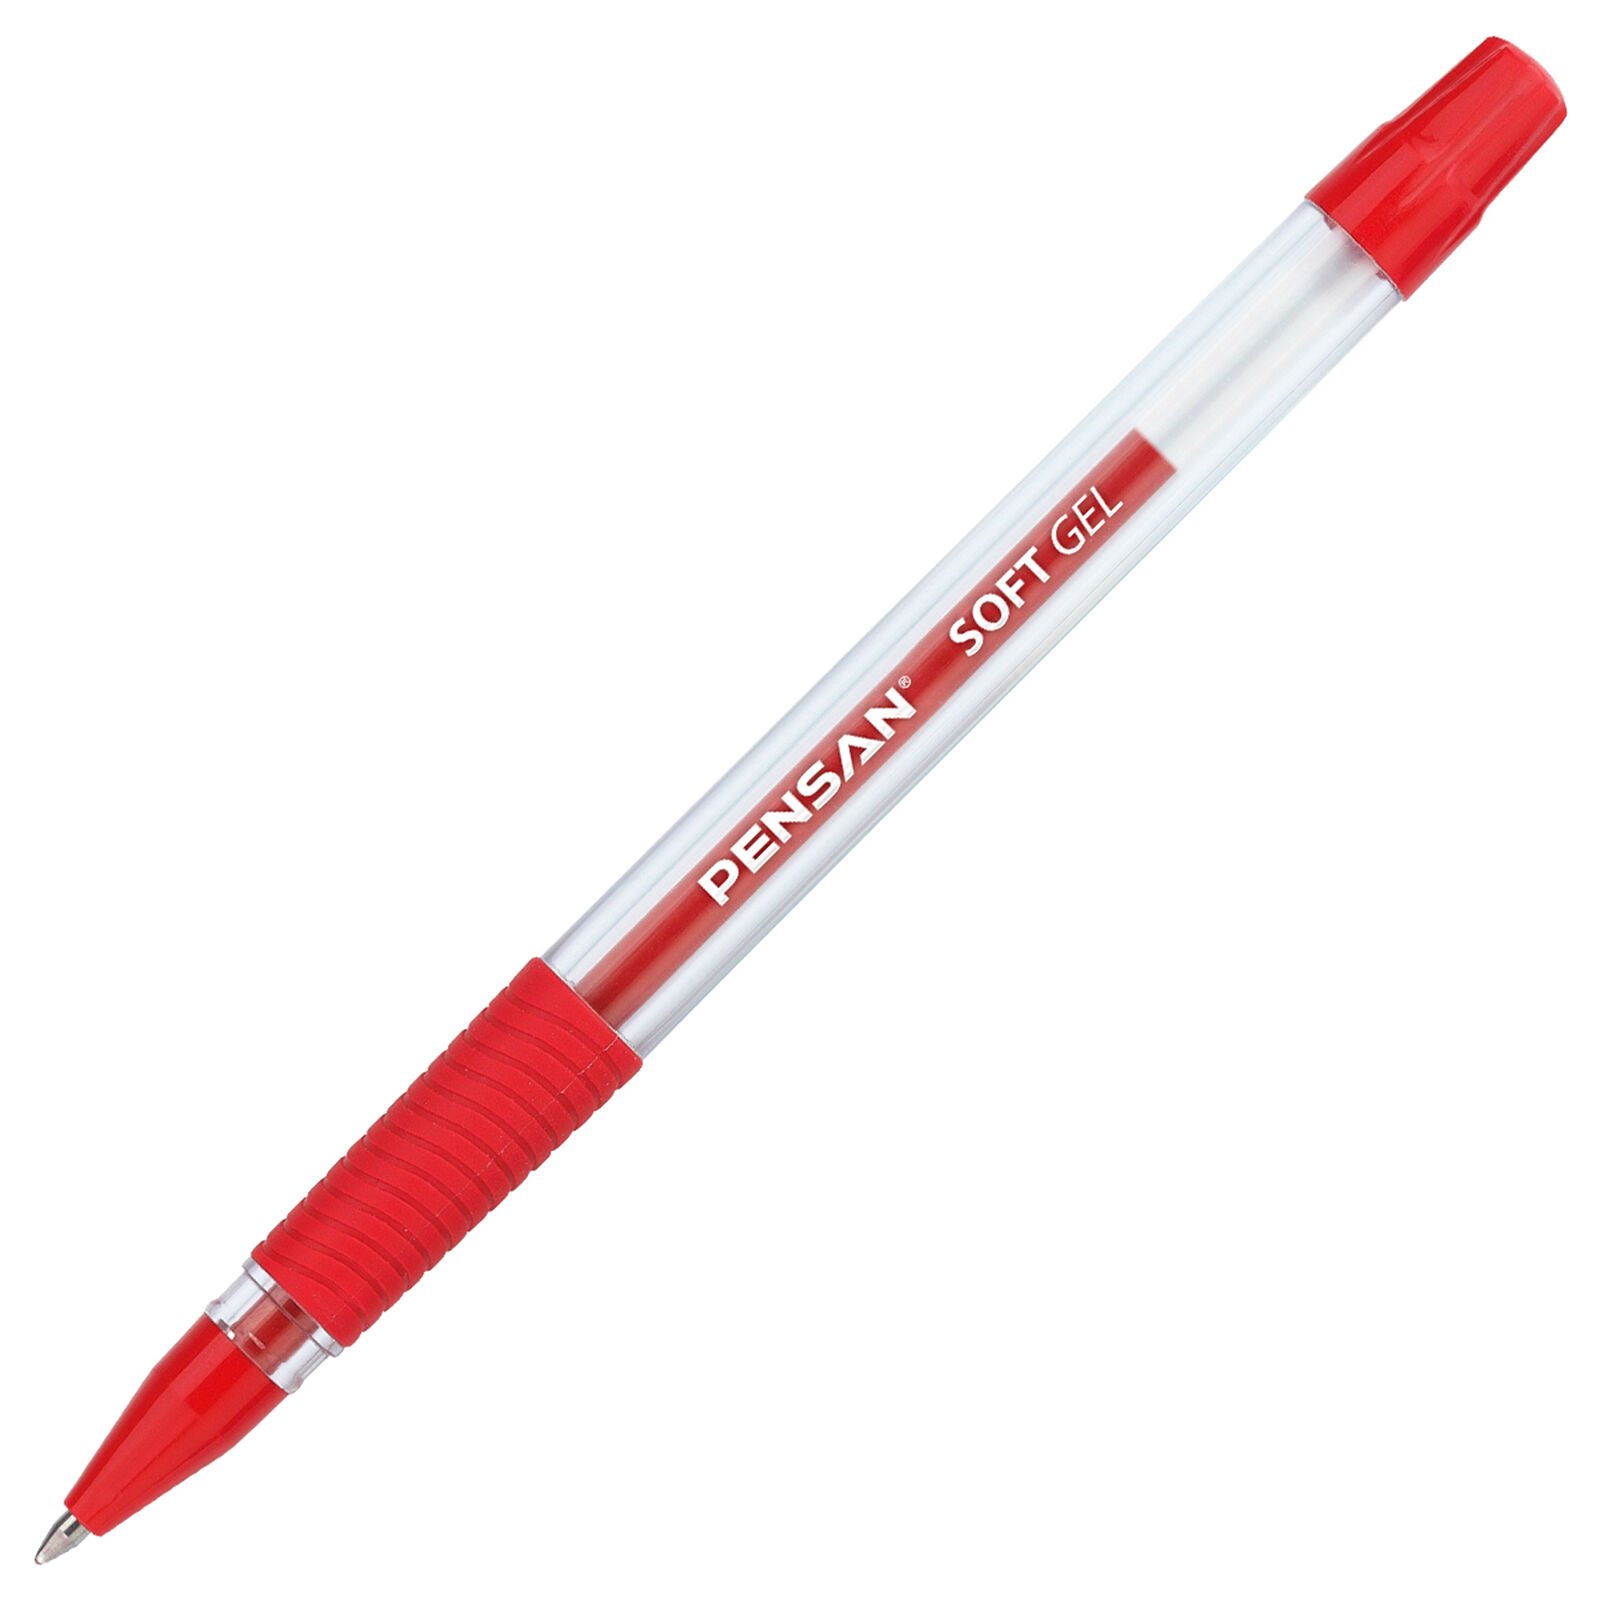 Pensan Soft Gel Tükenmez Kalem, 0.7 mm, Kırmızı